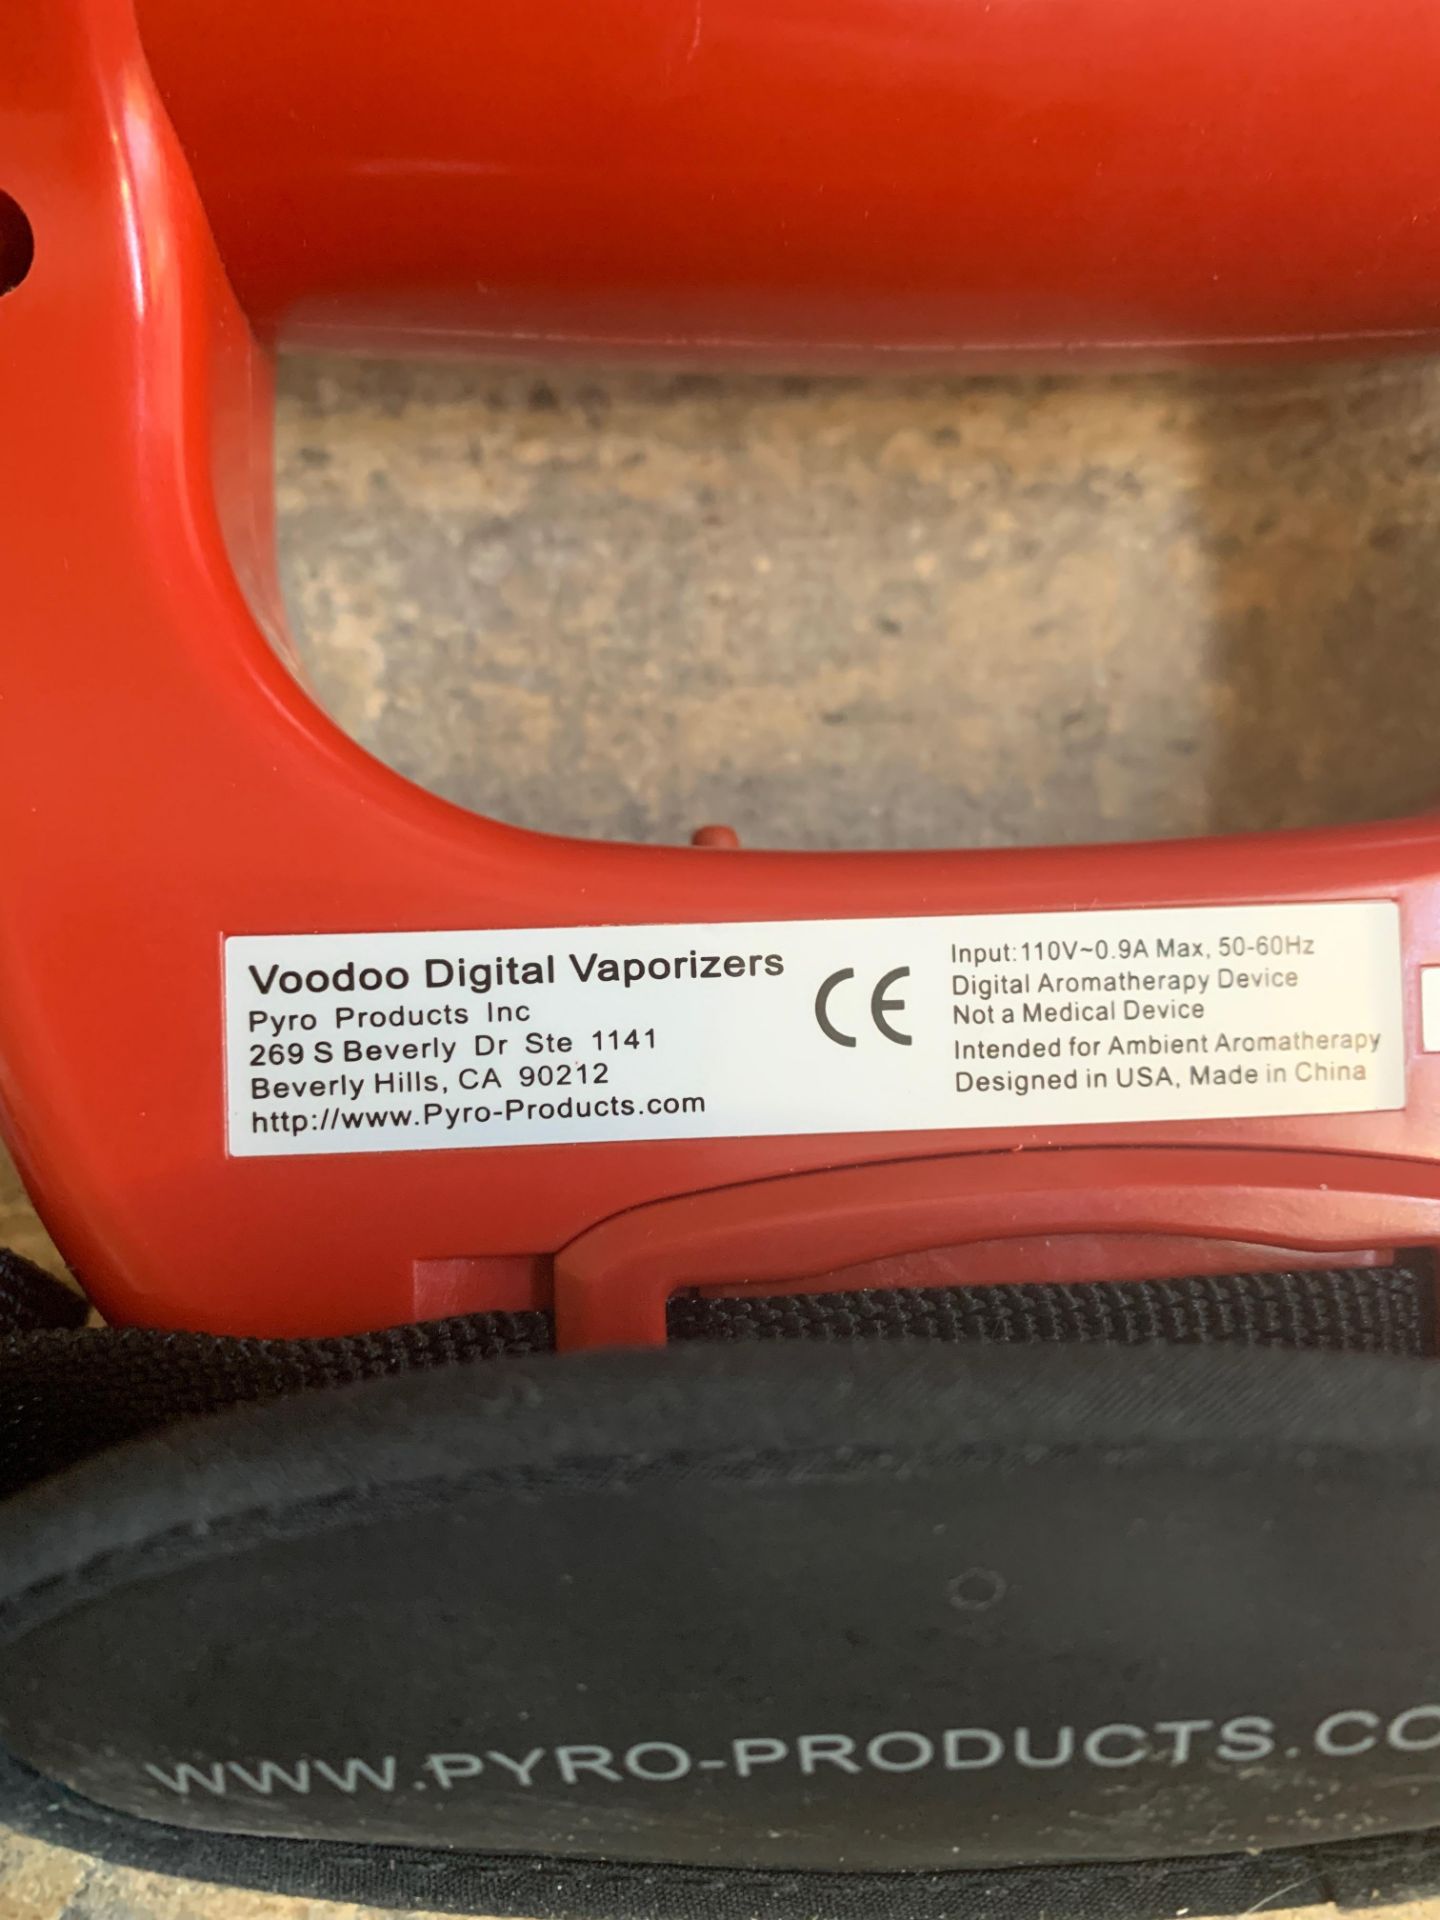 Vape Gun, Voodoo Digital Vaporizers - Image 3 of 3